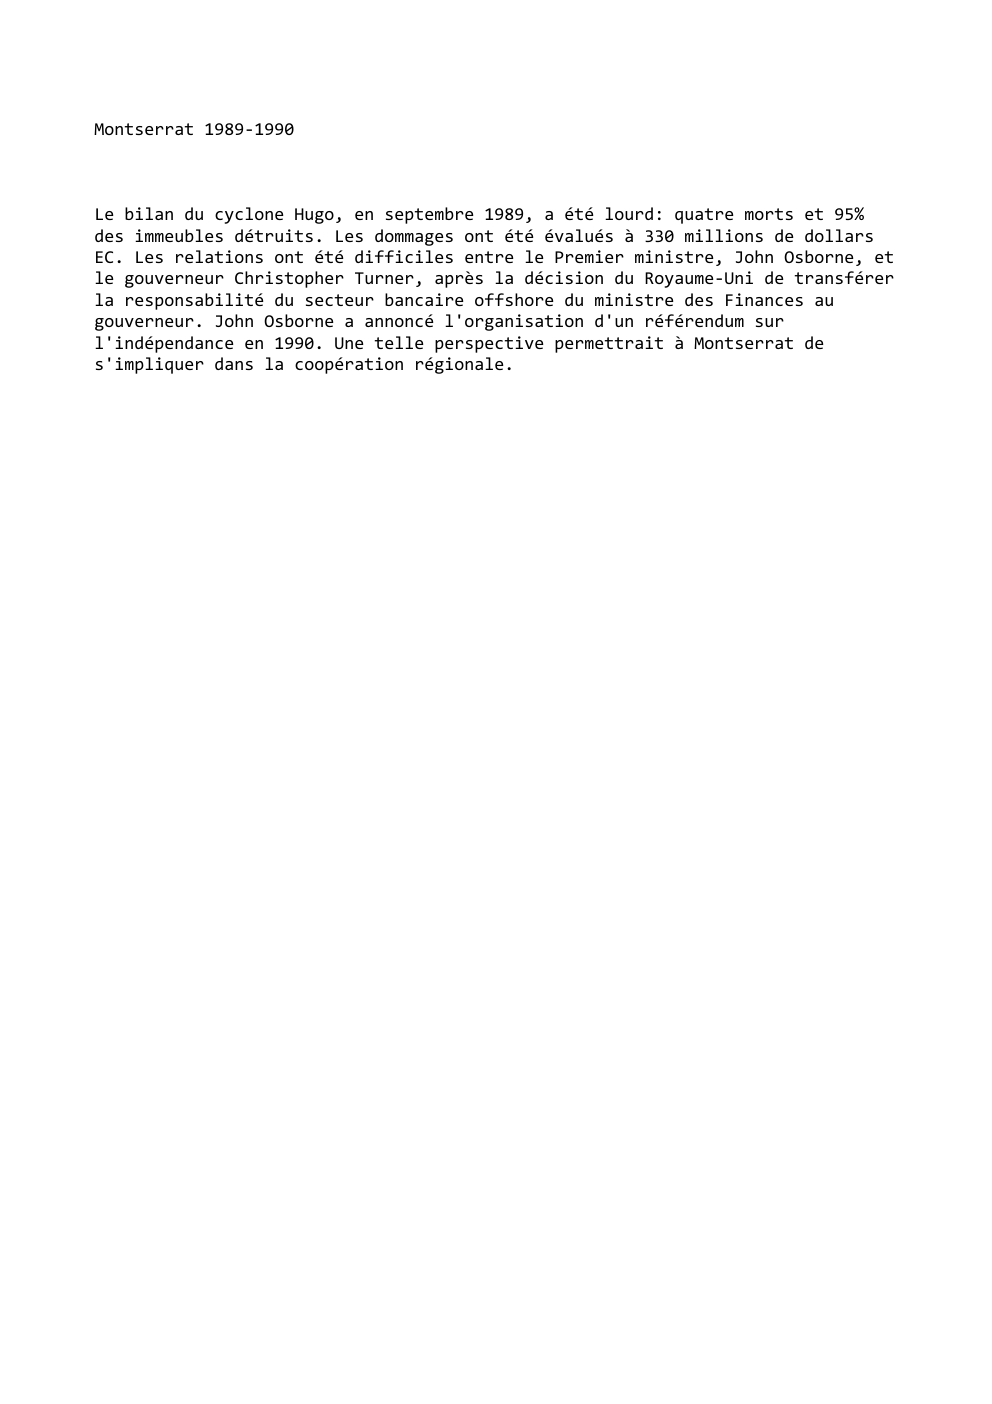 Prévisualisation du document Montserrat 1989-1990

Le bilan du cyclone Hugo, en septembre 1989, a été lourd: quatre morts et 95%
des immeubles détruits....